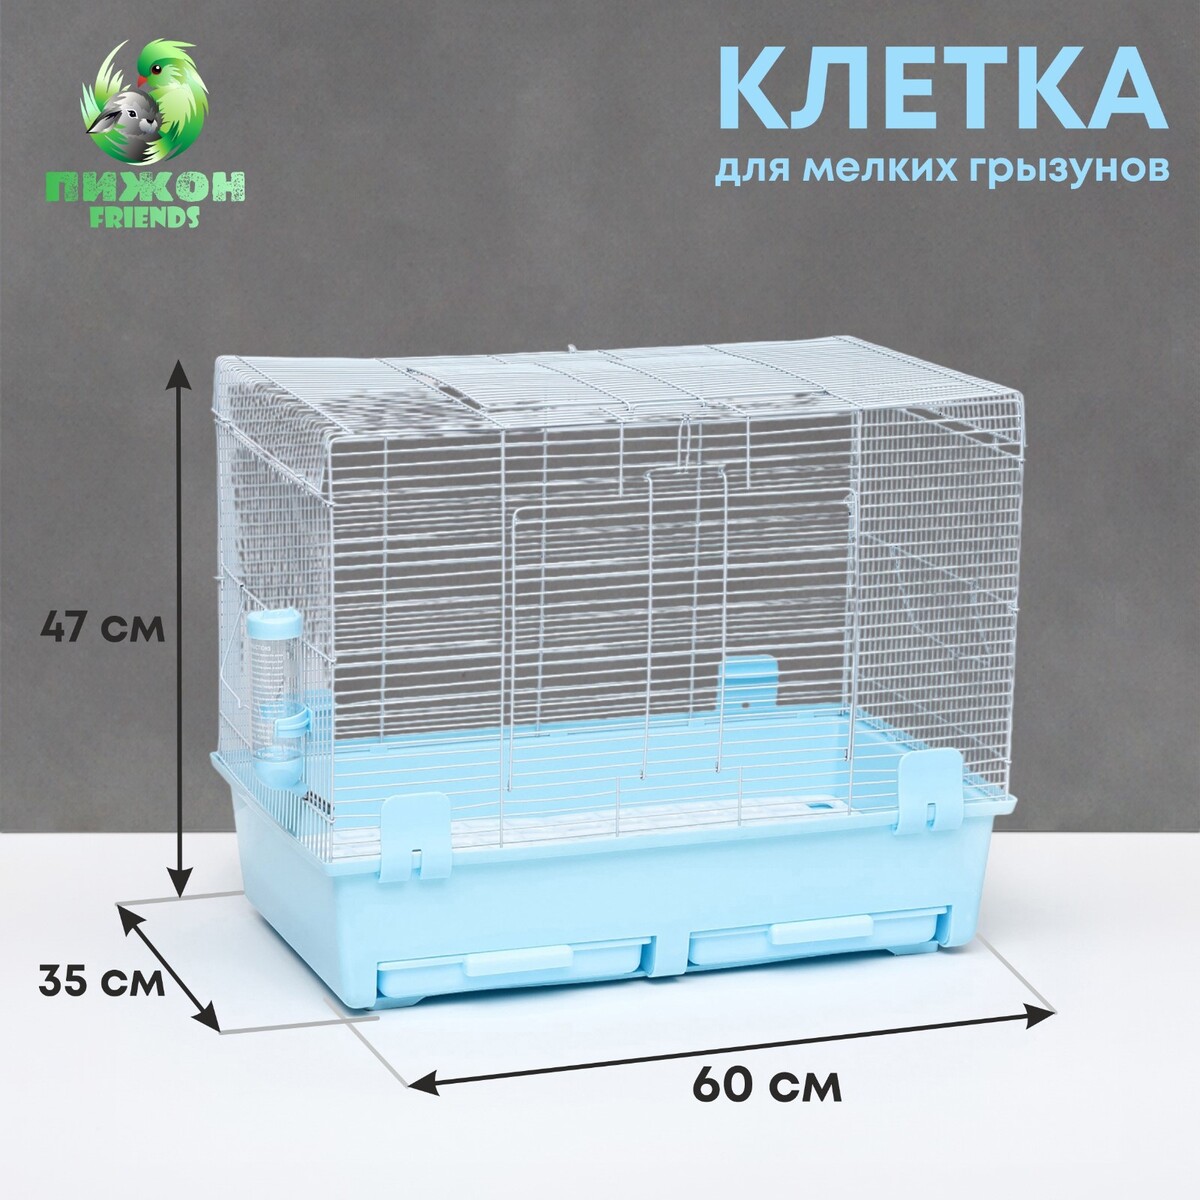 Клетка для грызунов с выдвижными поддонами 60 х 35 х 47 см, синяя клетка для кроликов морских свинок